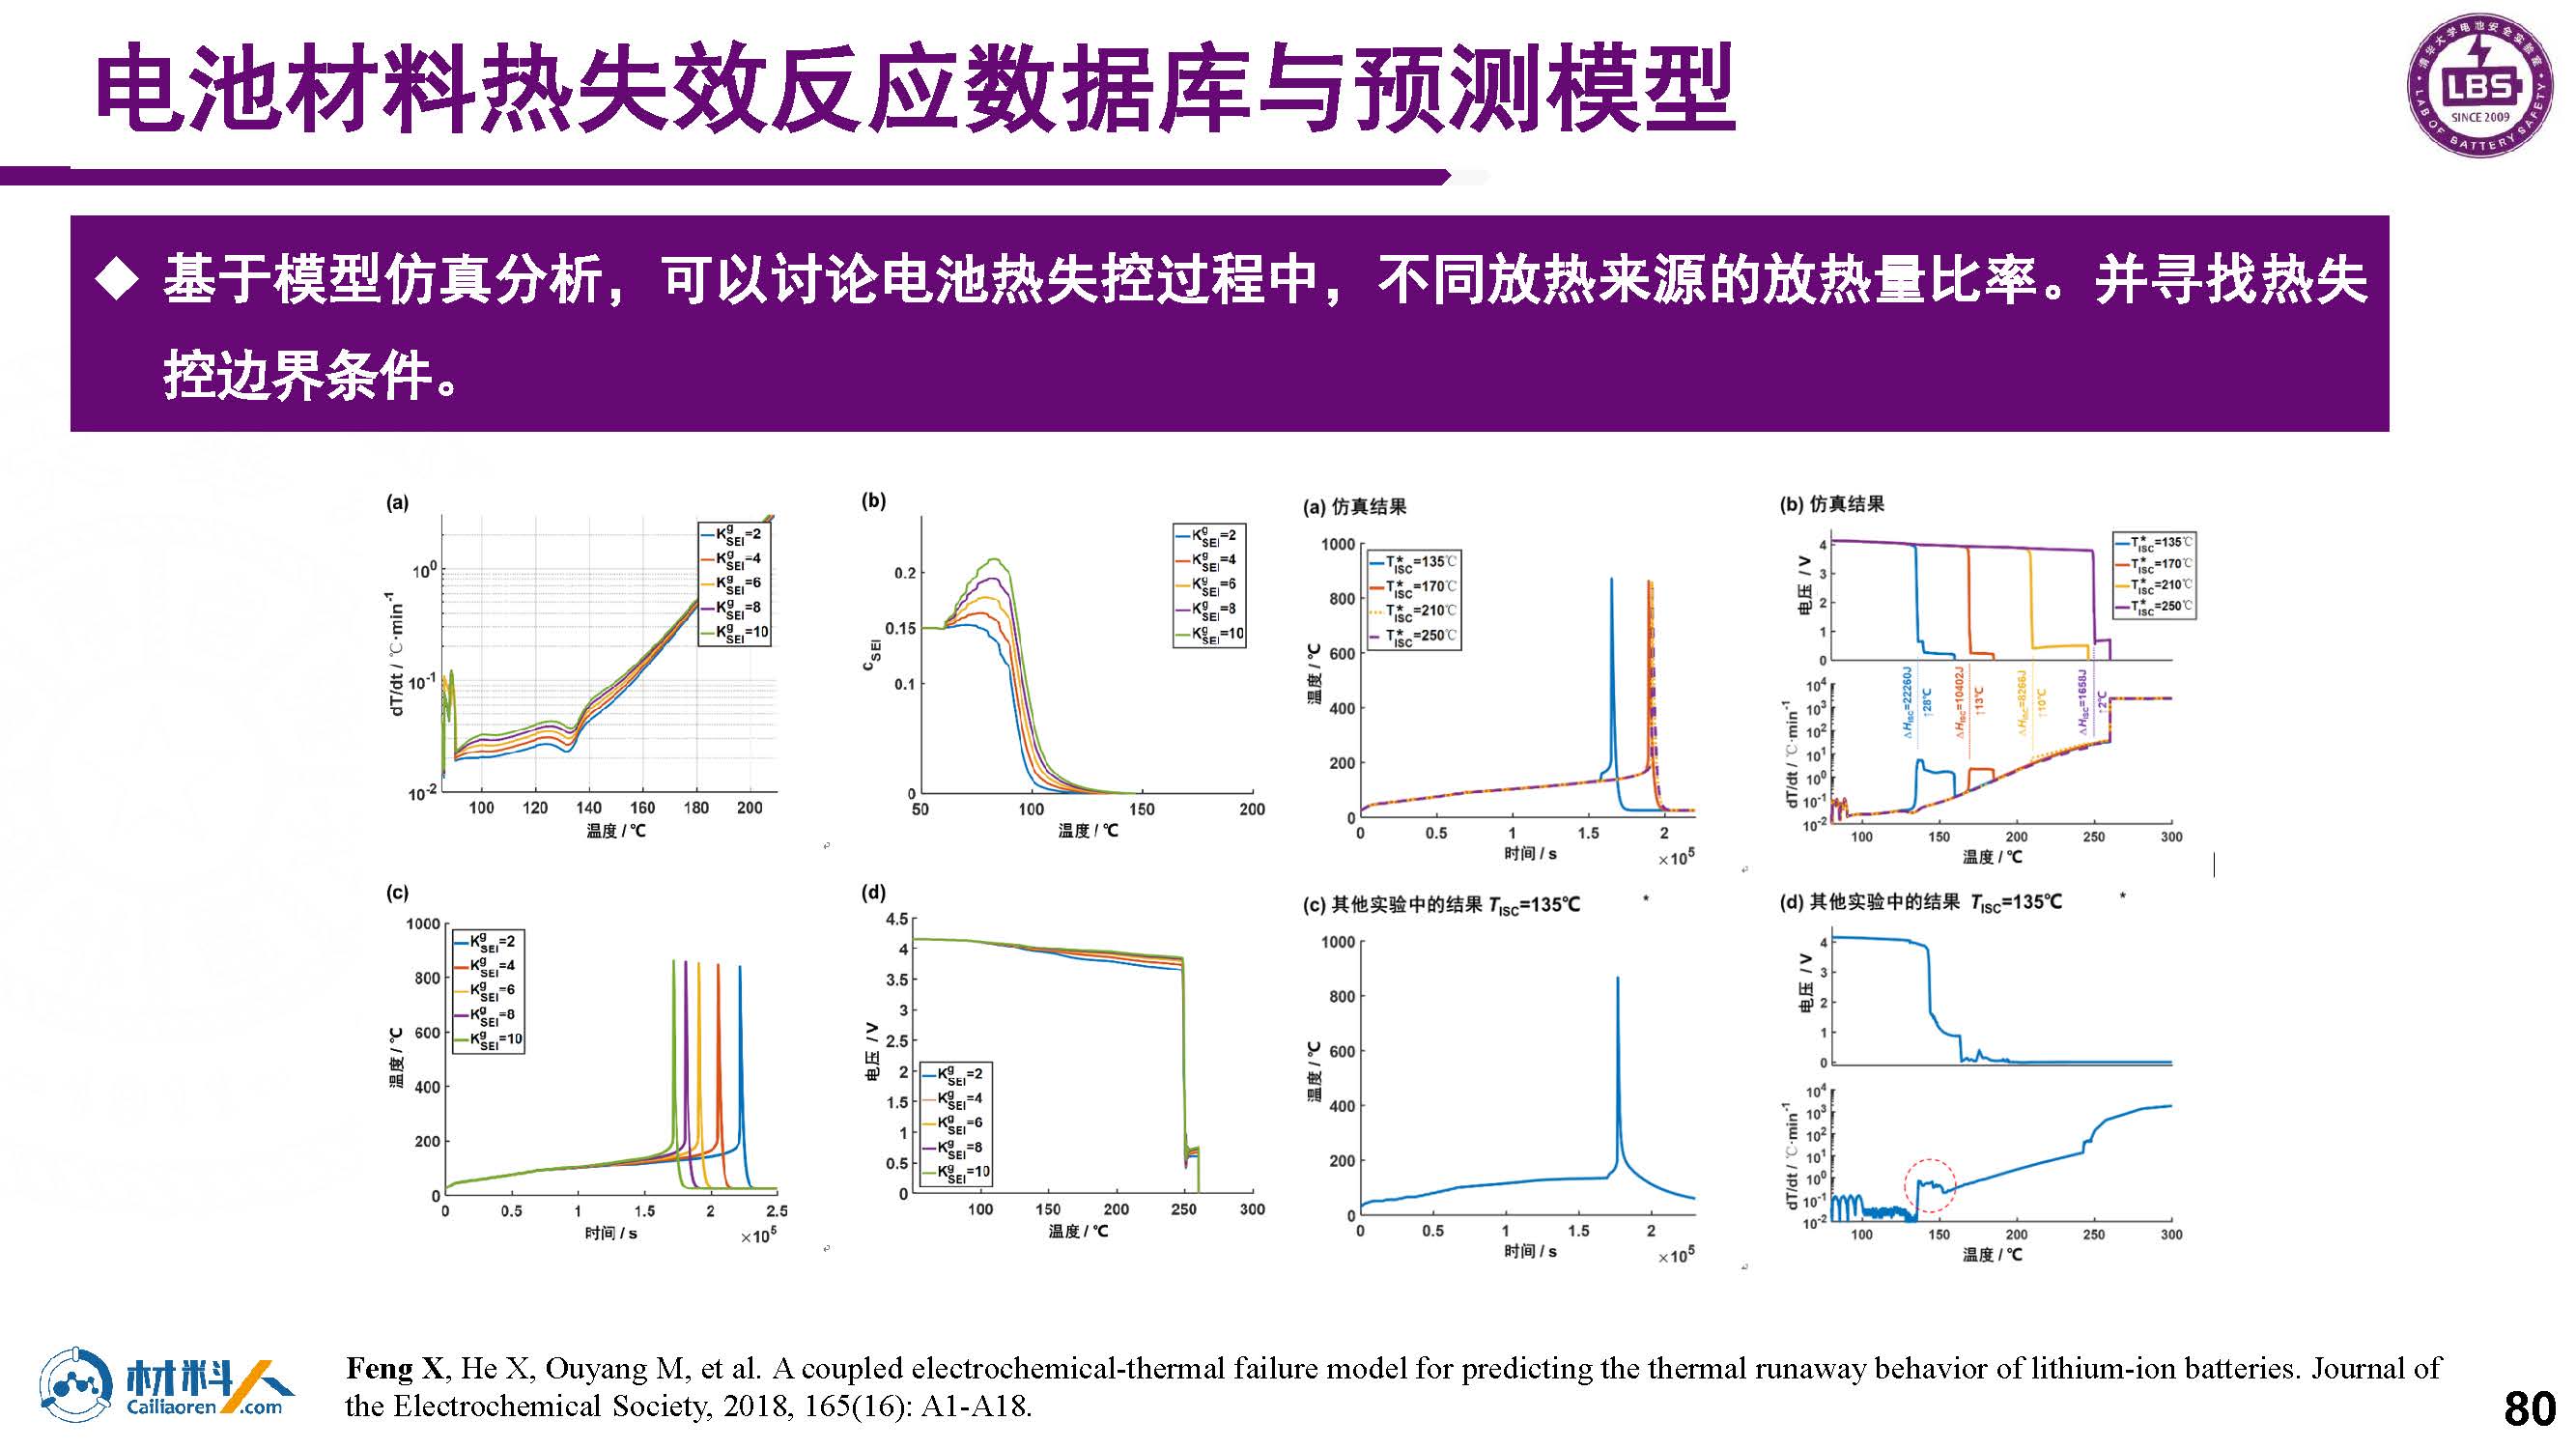 锂离子电池热失效测试、表征与建模_20210819_页面_76.jpg